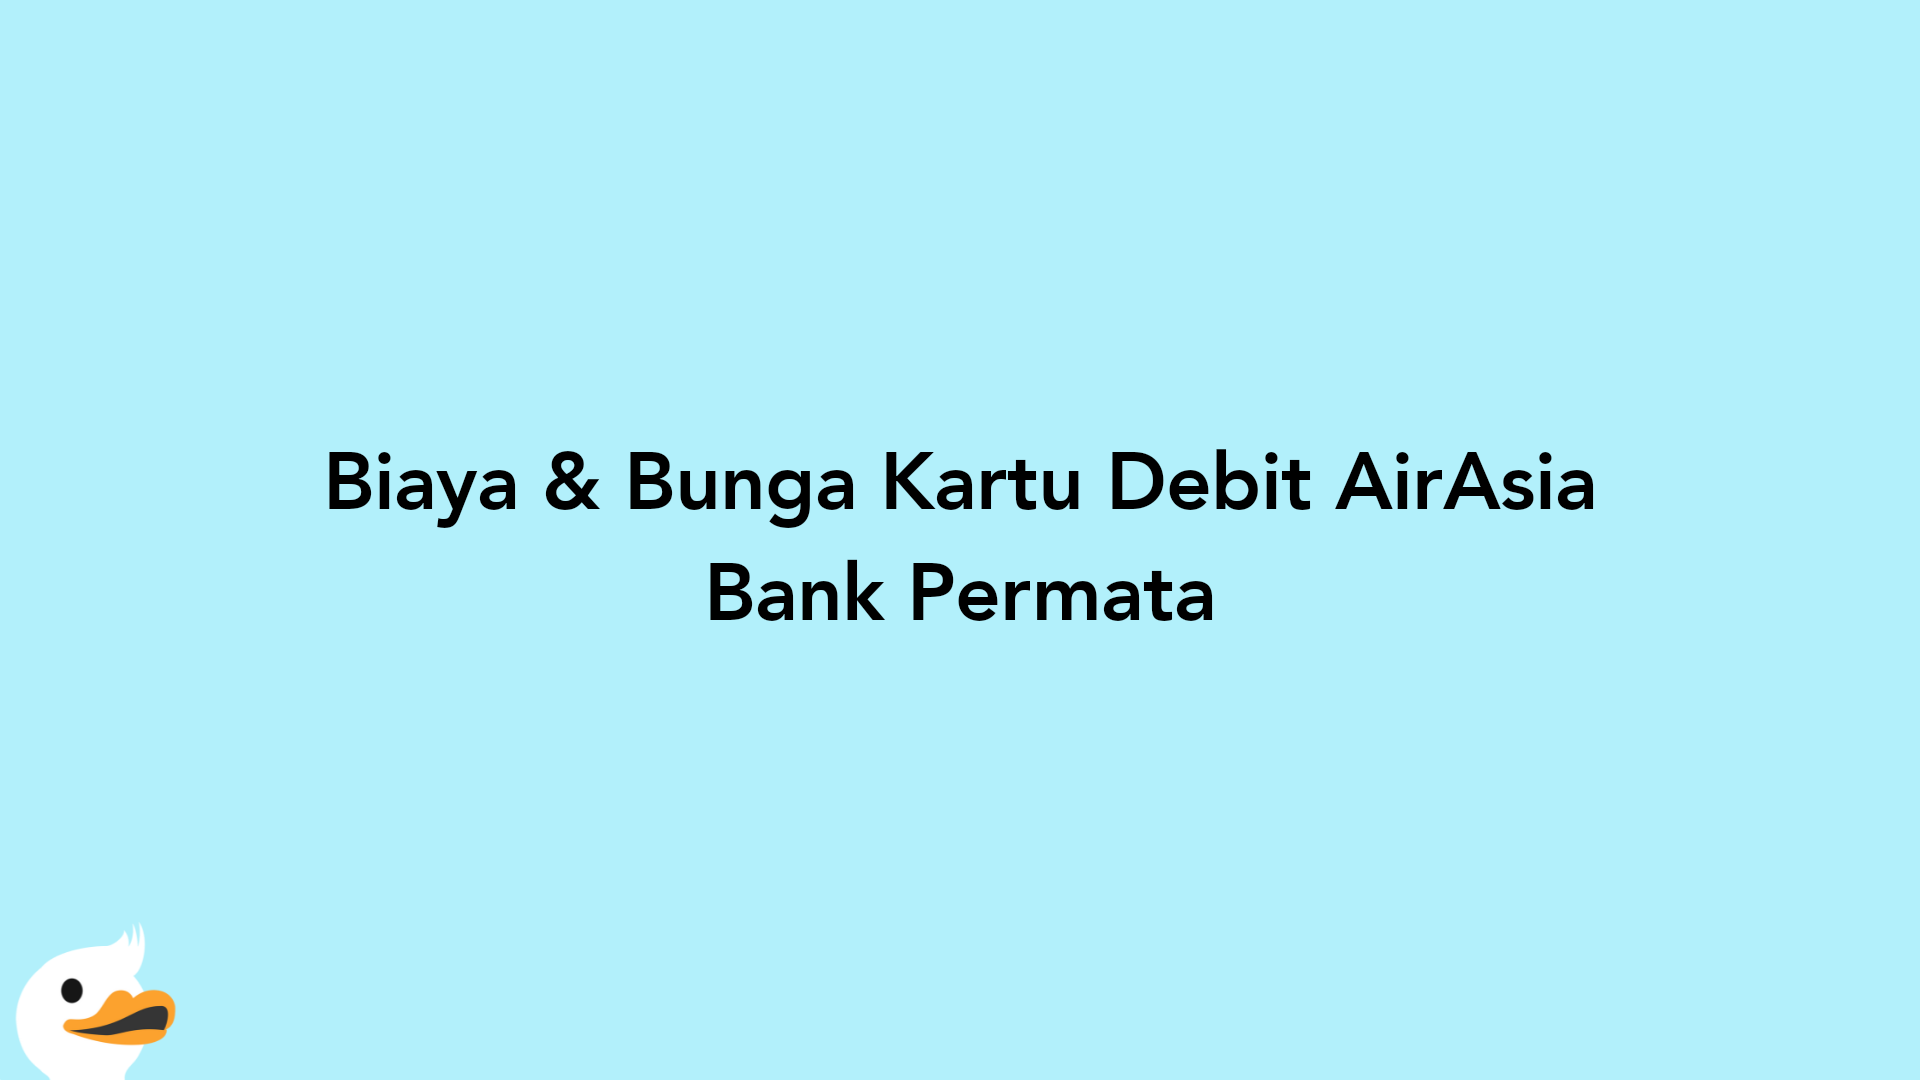 Biaya & Bunga Kartu Debit AirAsia Bank Permata